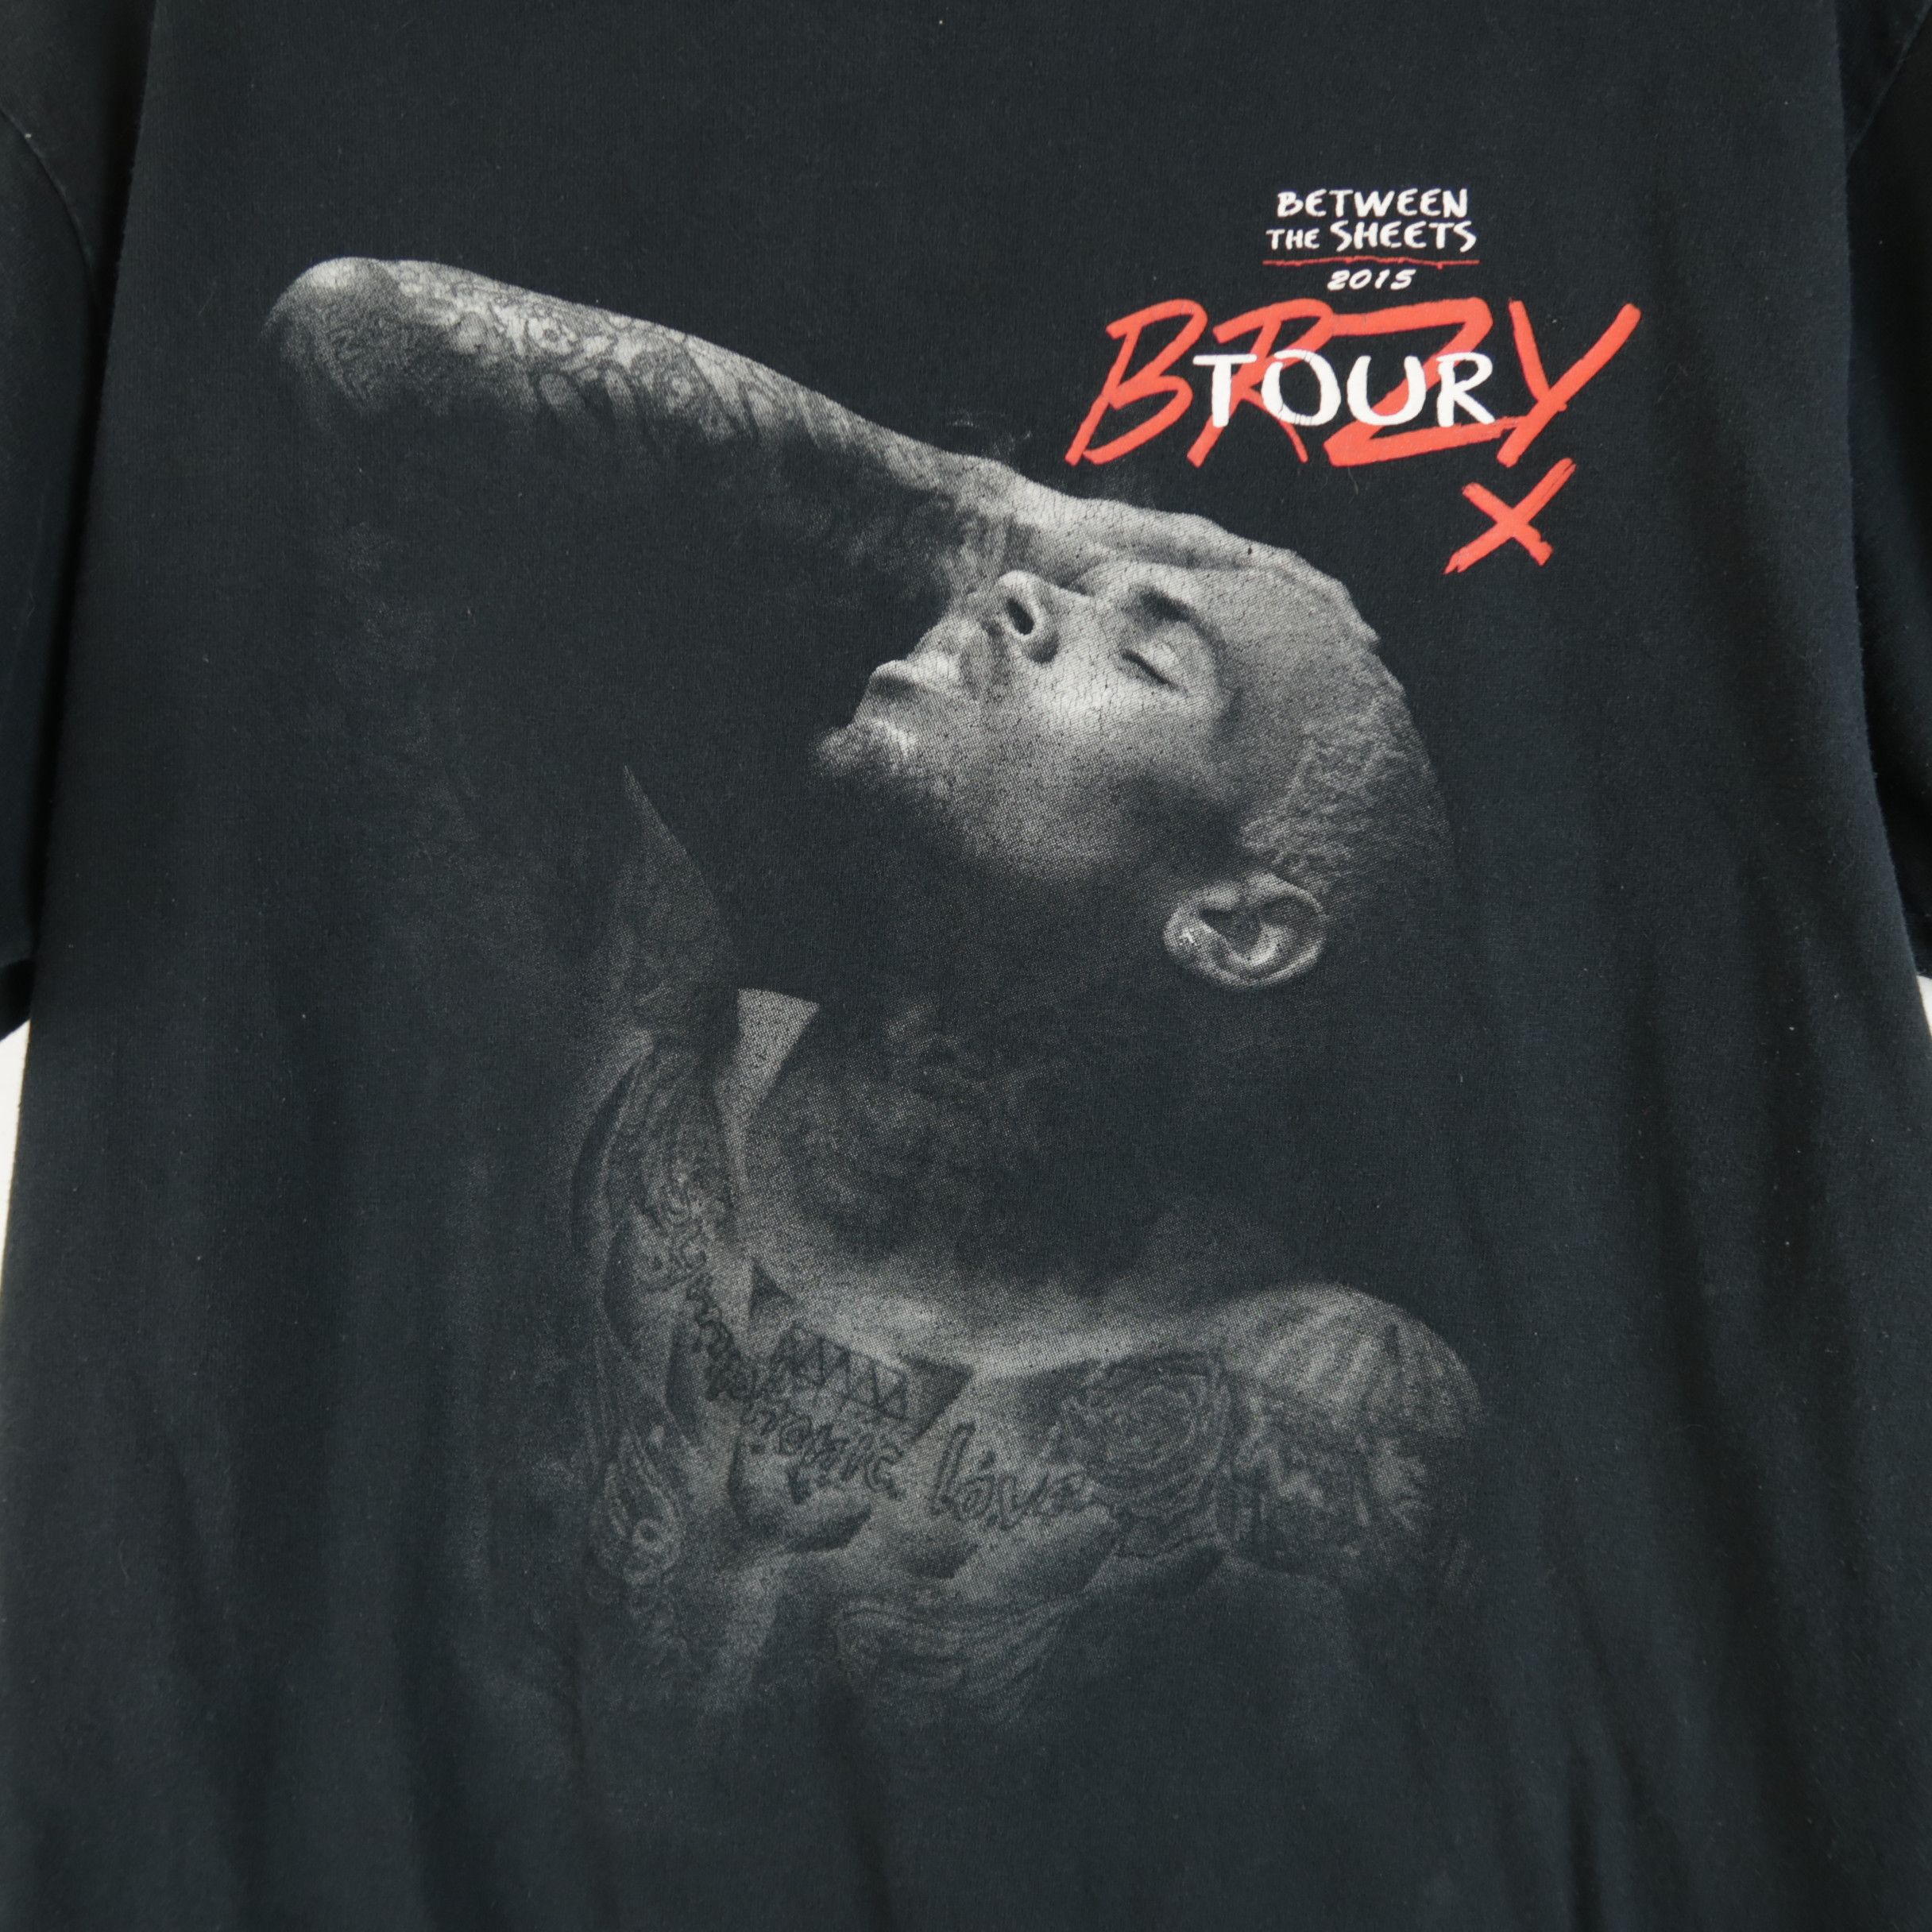 Vintage Chris Brown Men's Between the Sheets 2015 Brzy Tour T-Shirt Size US L / EU 52-54 / 3 - 2 Preview